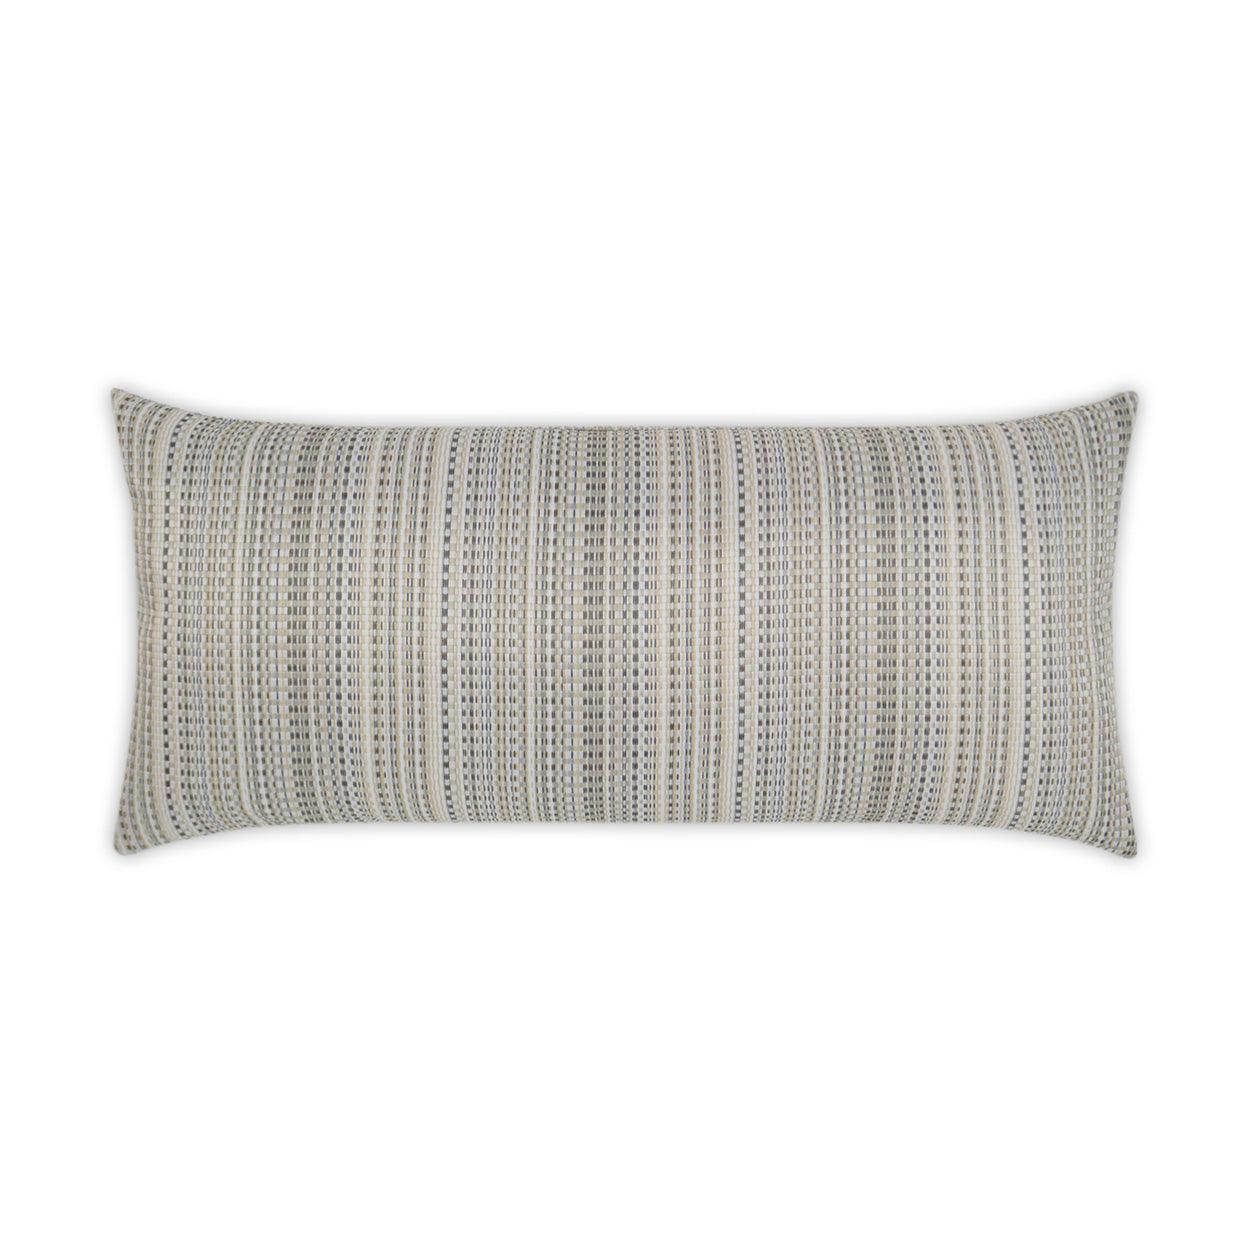 LOOMLAN Outdoor - Outdoor Sunrun Lumbar Pillow - Natural - Outdoor Pillows